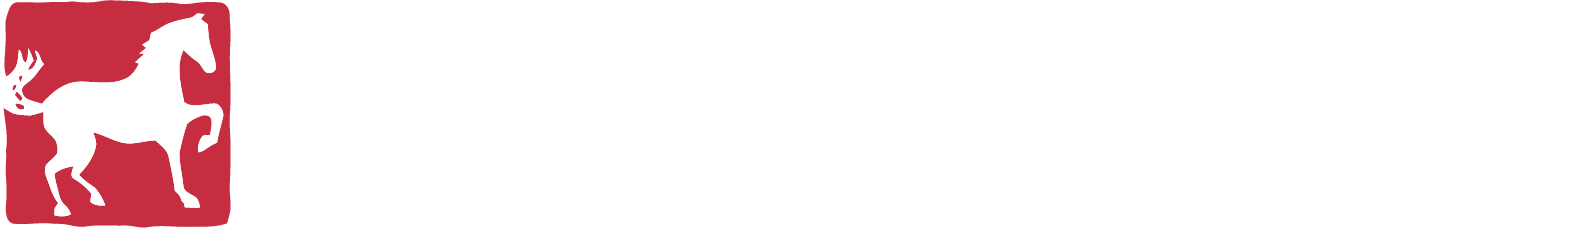 WhiteHorse Finance logo grand pour les fonds sombres (PNG transparent)